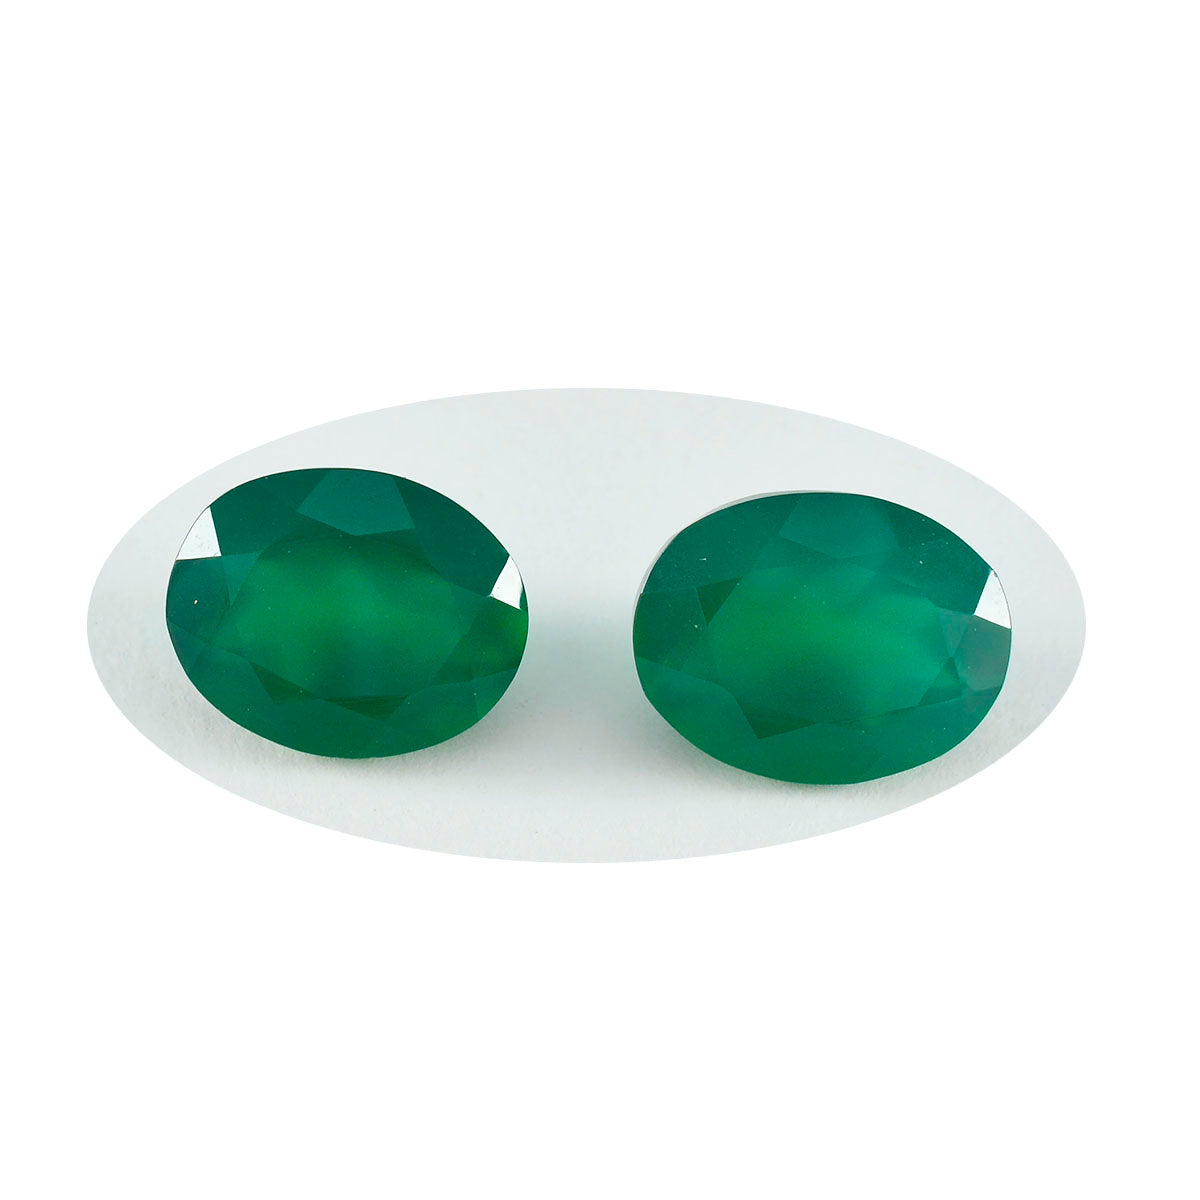 Riyogems 1 pièce d'onyx vert véritable à facettes 7x9mm, forme ovale, belle pierre précieuse de qualité